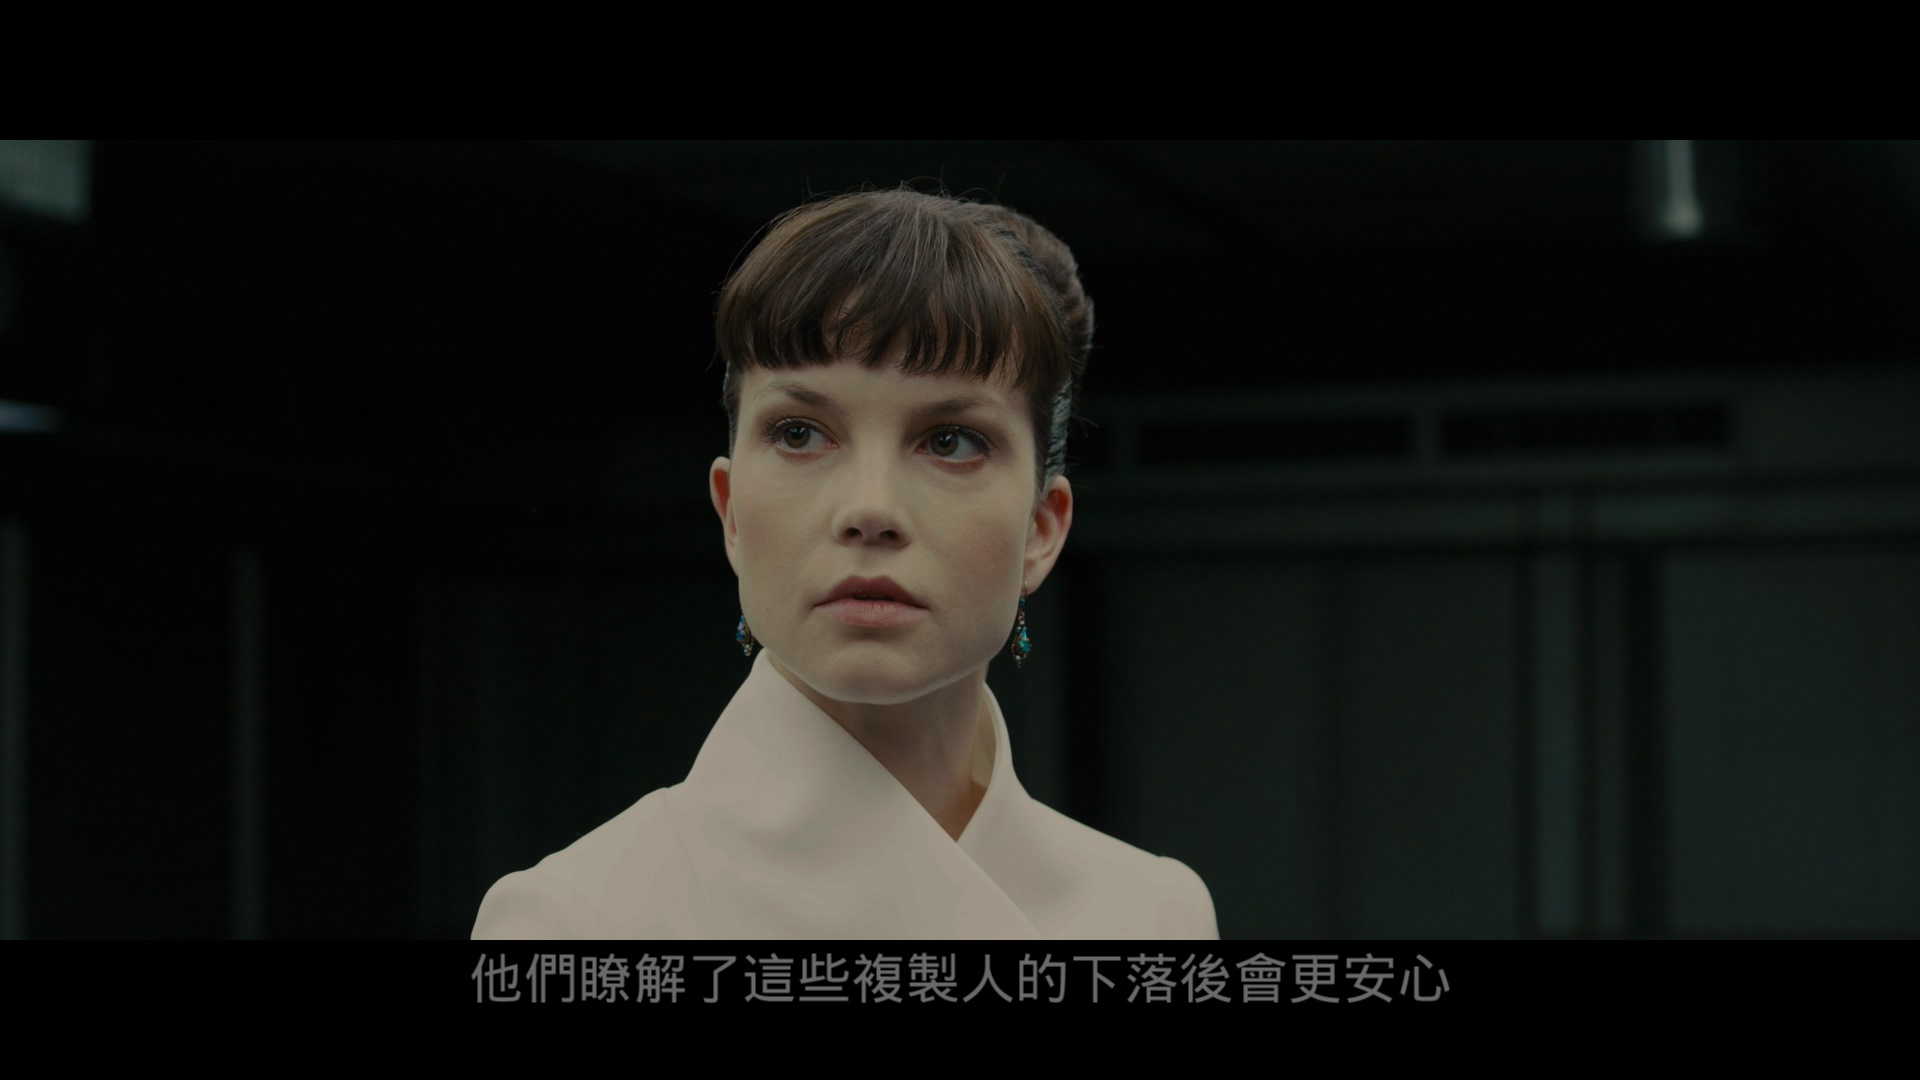 银翼杀手2049 [DIY简繁/简繁双语字幕] 高码版 4K UHD原盘 Blade Runner 2049 2017 2160p UHD Blu-ray HEVC Atmos-wezjh@OurBits     [83.59 GB ]-3.jpg